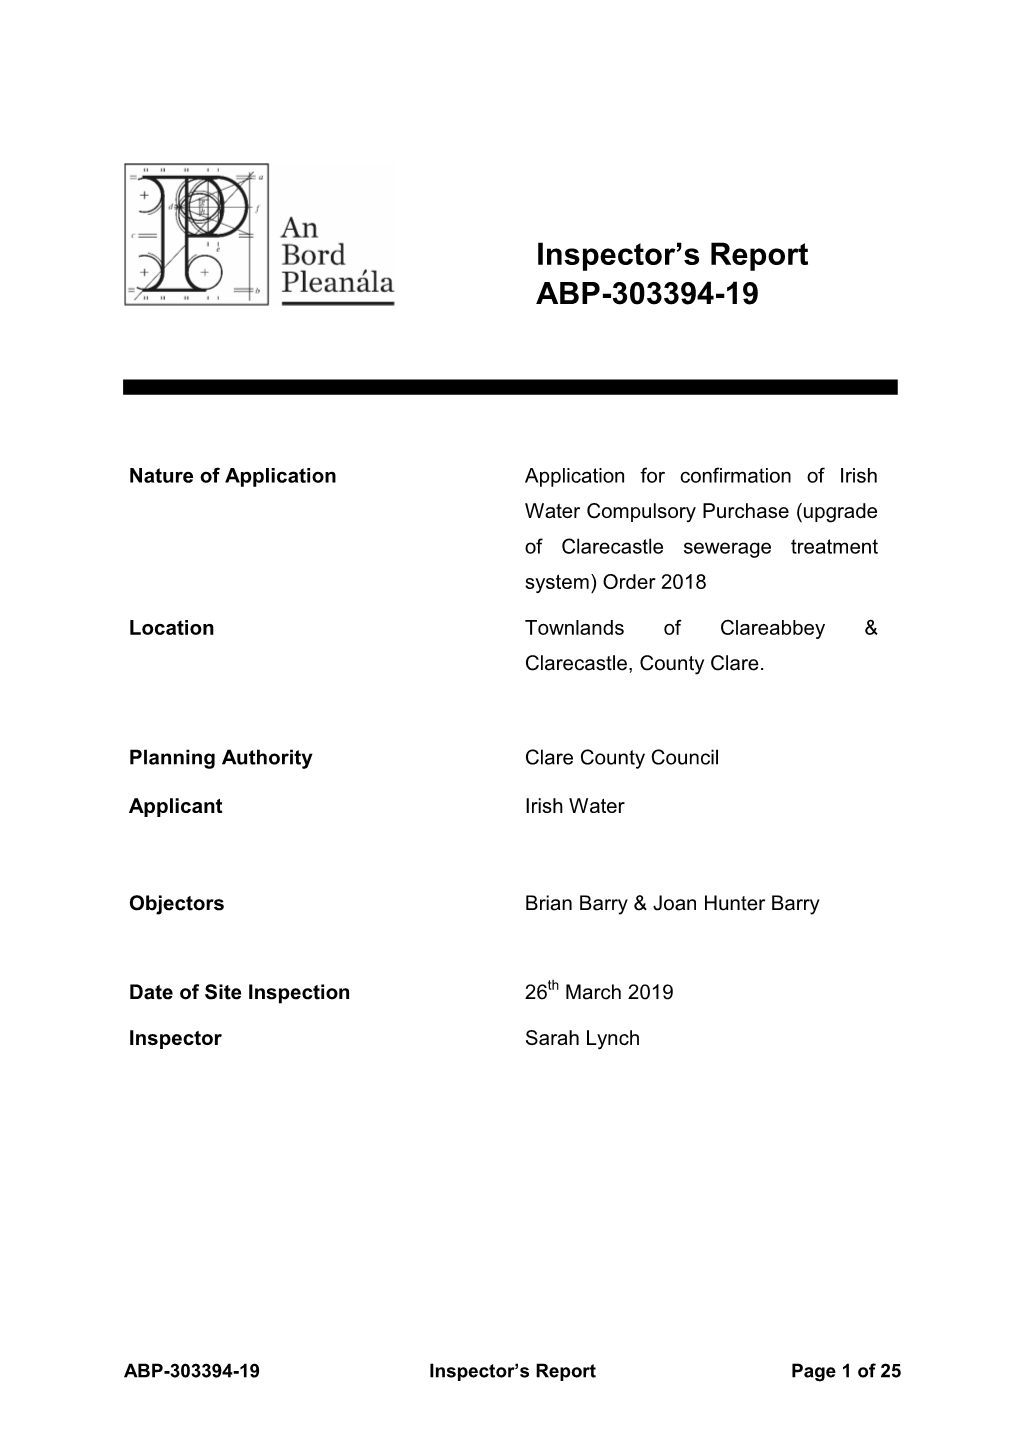 Inspector's Report ABP-303394-19